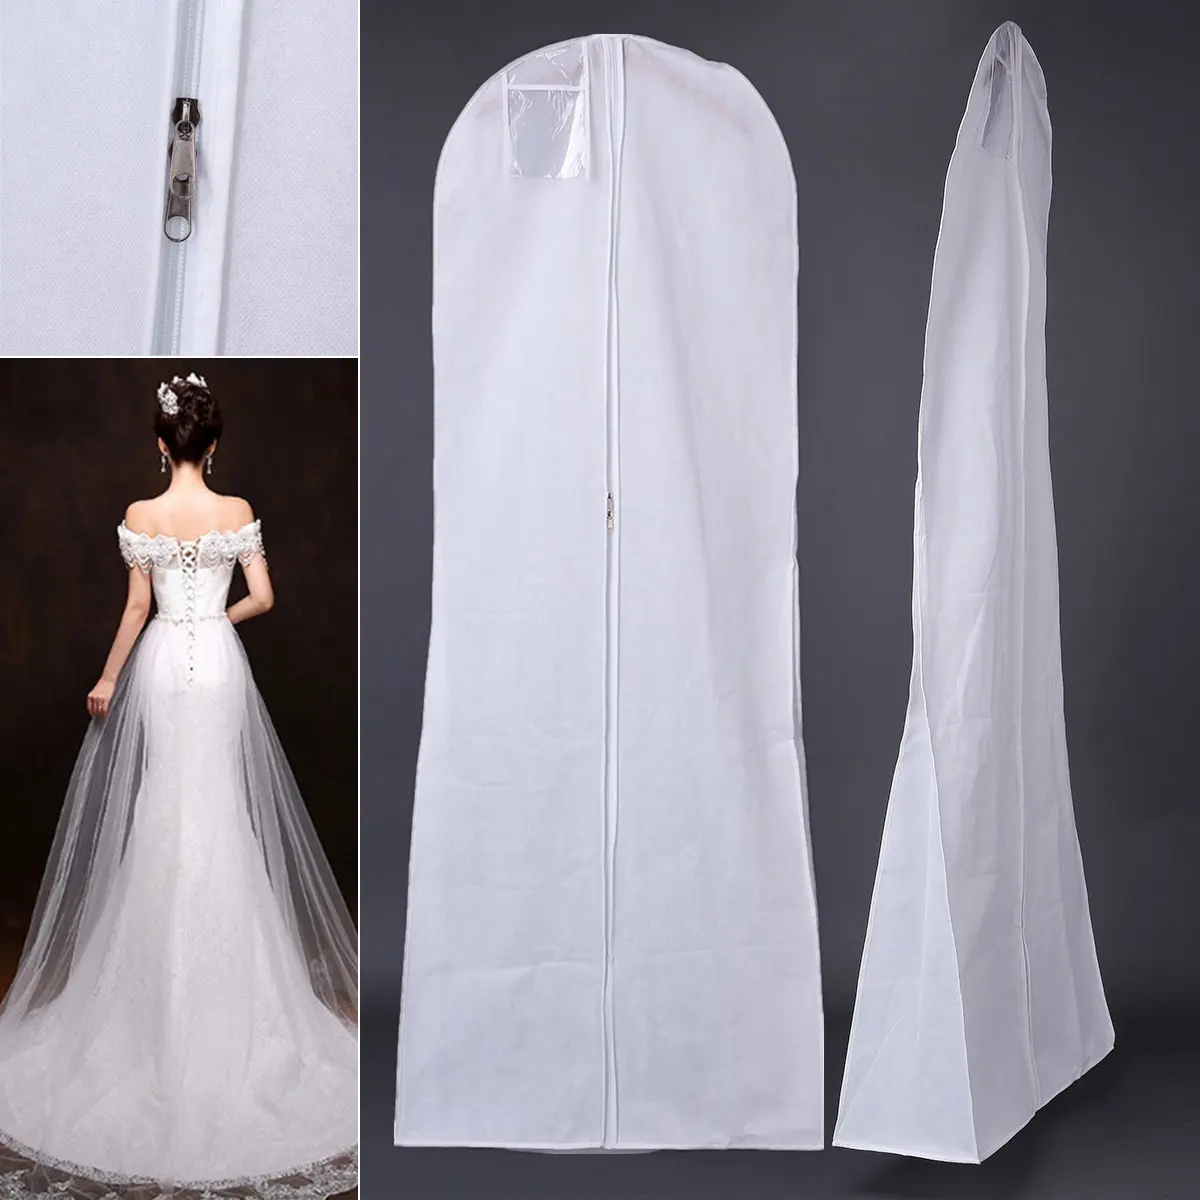 Atacado logotipo personalizado respirável tampa de roupas vestido de noiva longo não tecido vestido de noiva saco de vestuário